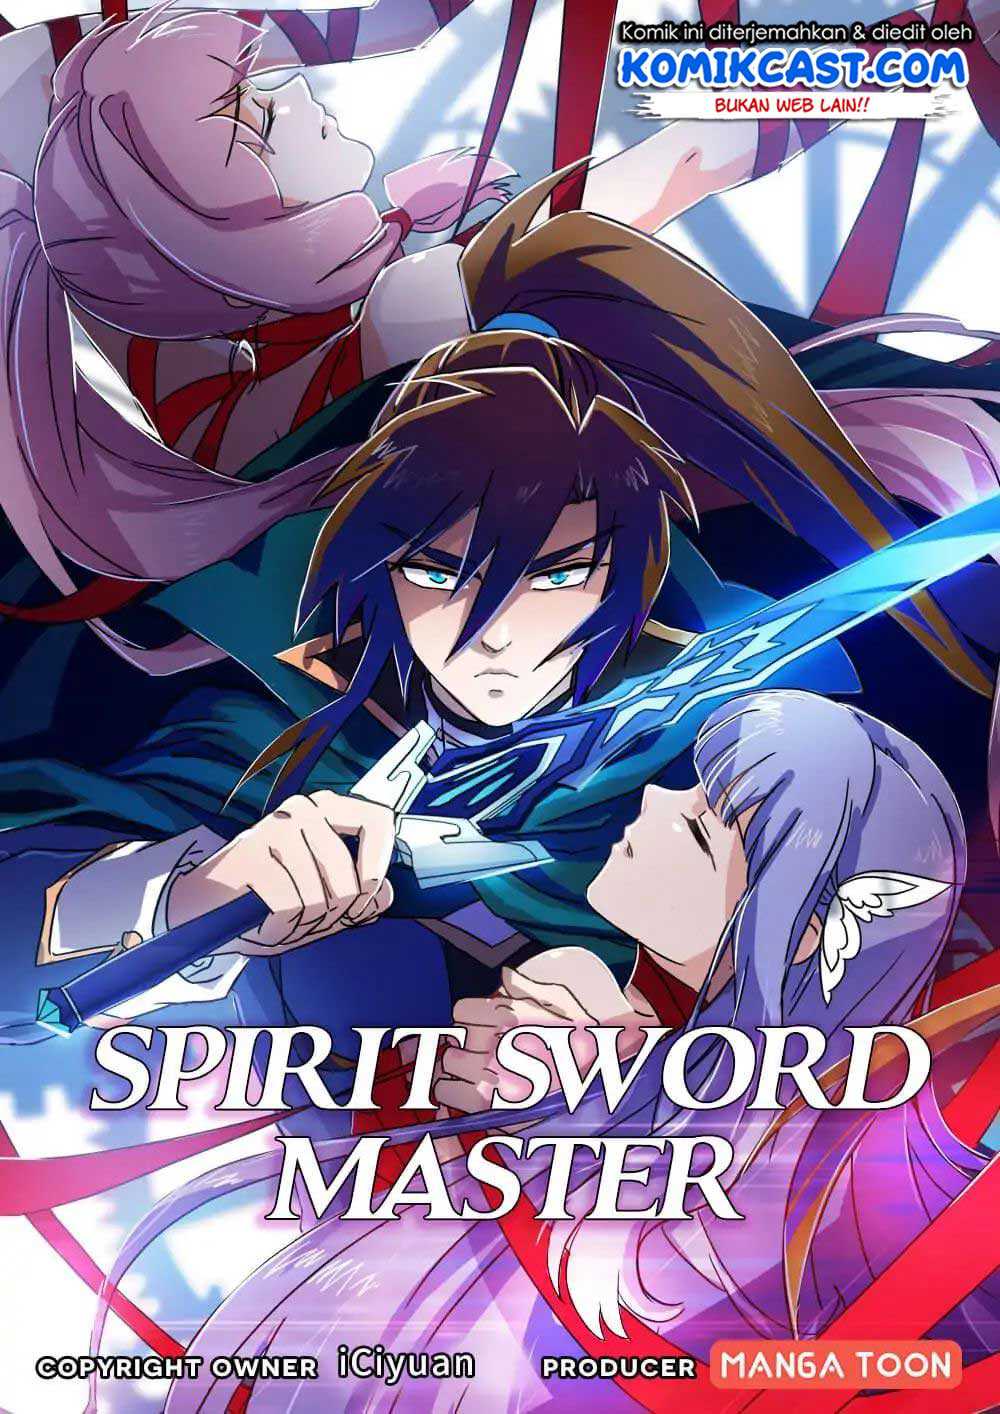 Spirit Sword Sovereign Chapter 96-100